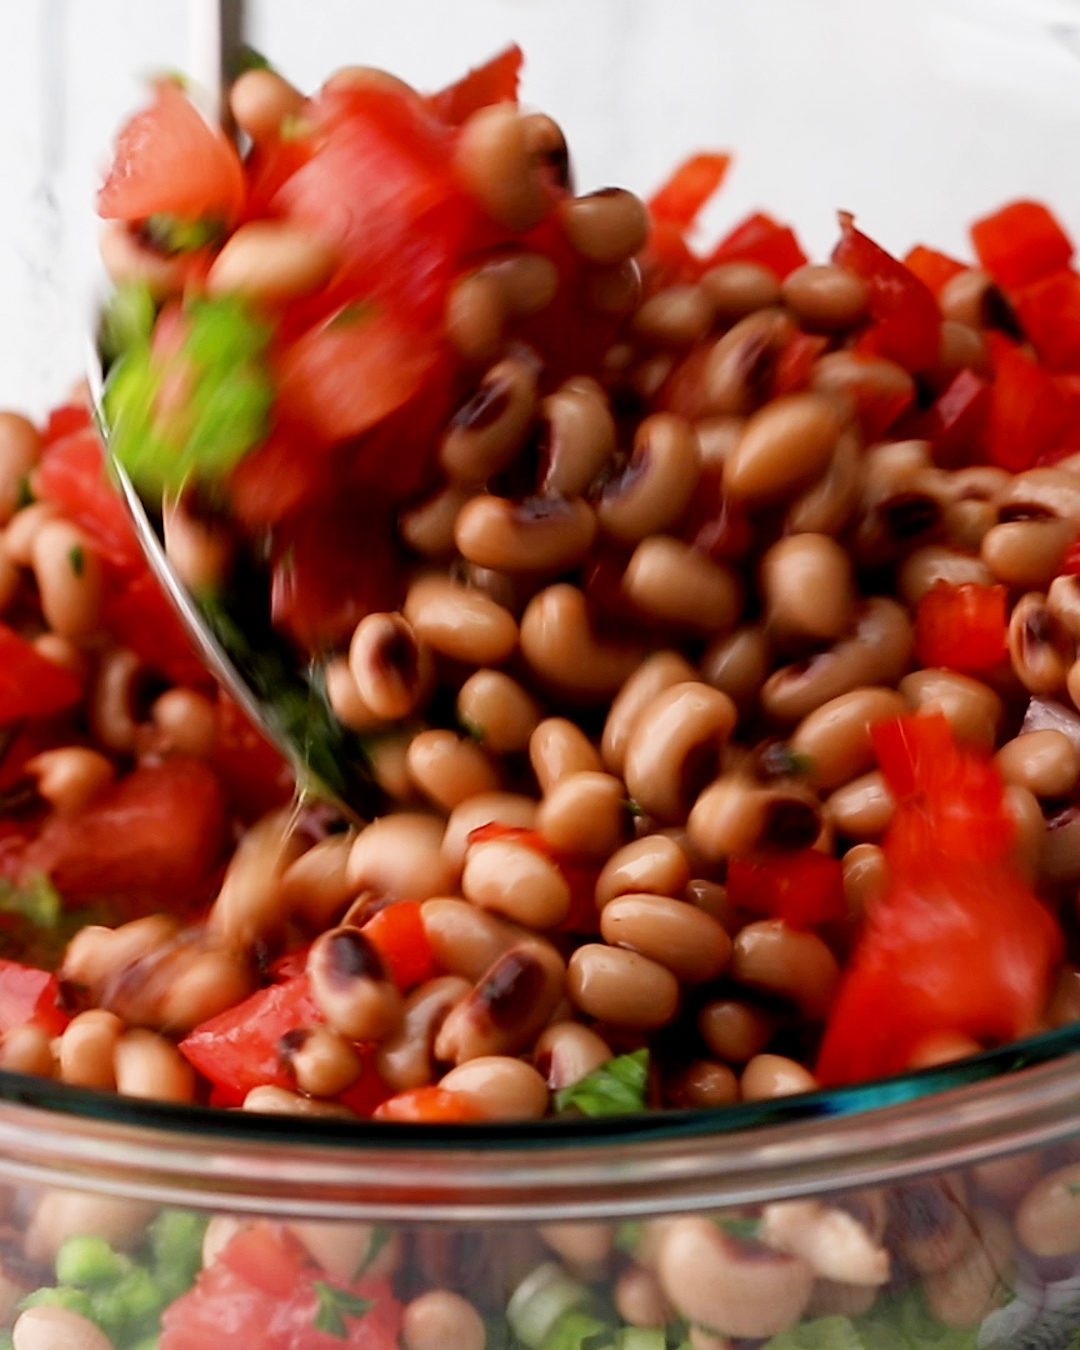 Black Eyed Peas Salad Step 3 Toss